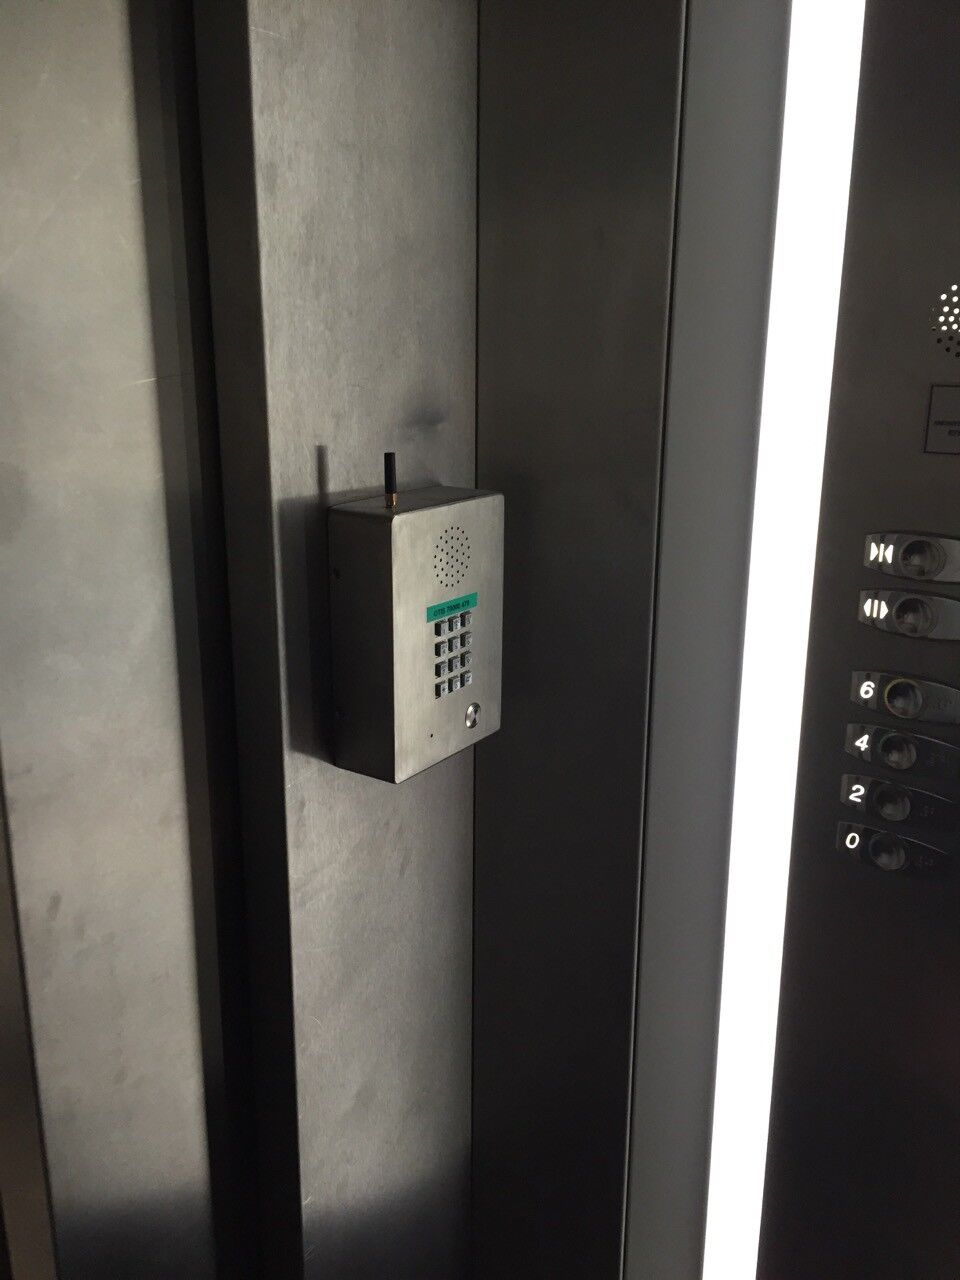 يدوي هاتف المصعد